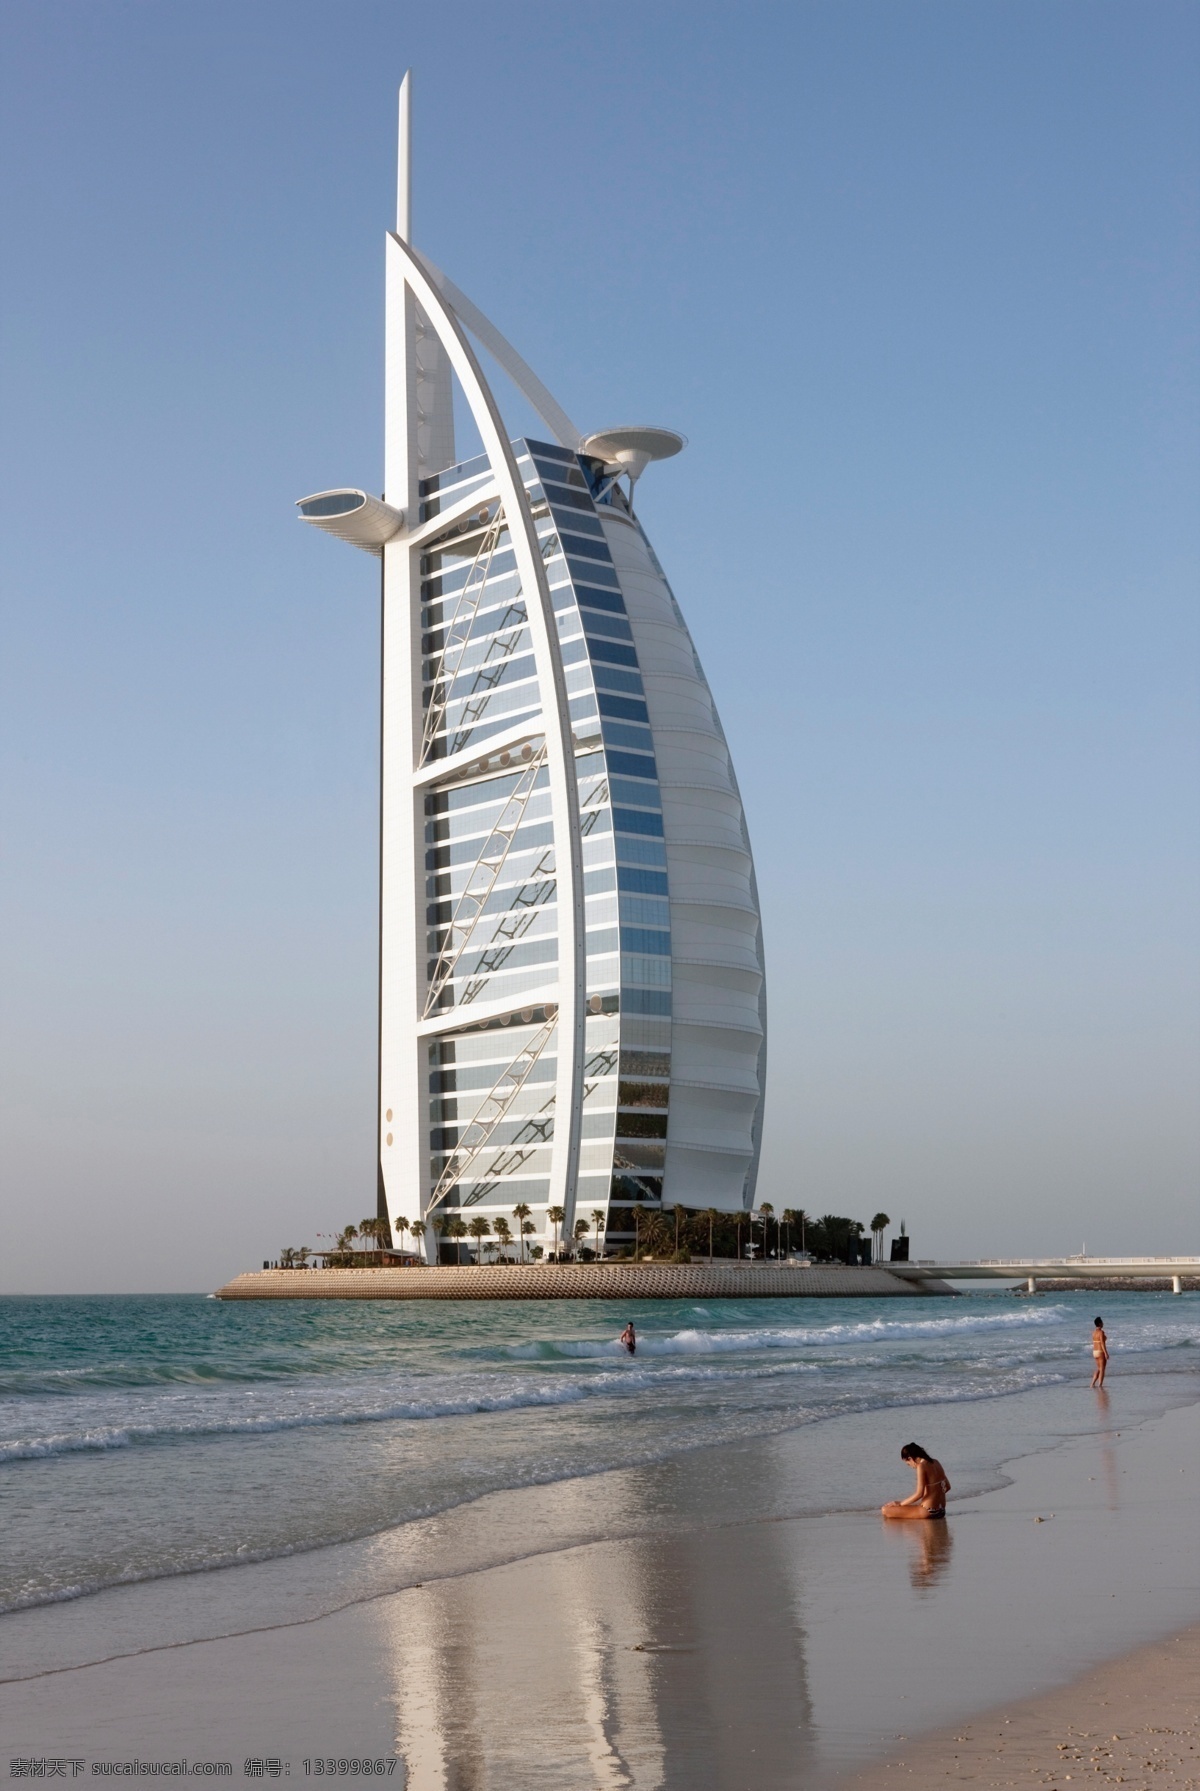 迪拜 迪拜风景 迪拜景观 迪拜风光 酒店 七星级酒店 帆船酒店 迪拜酒店 迪拜帆船酒店 高清 城市建筑 旅游摄影 国外旅游